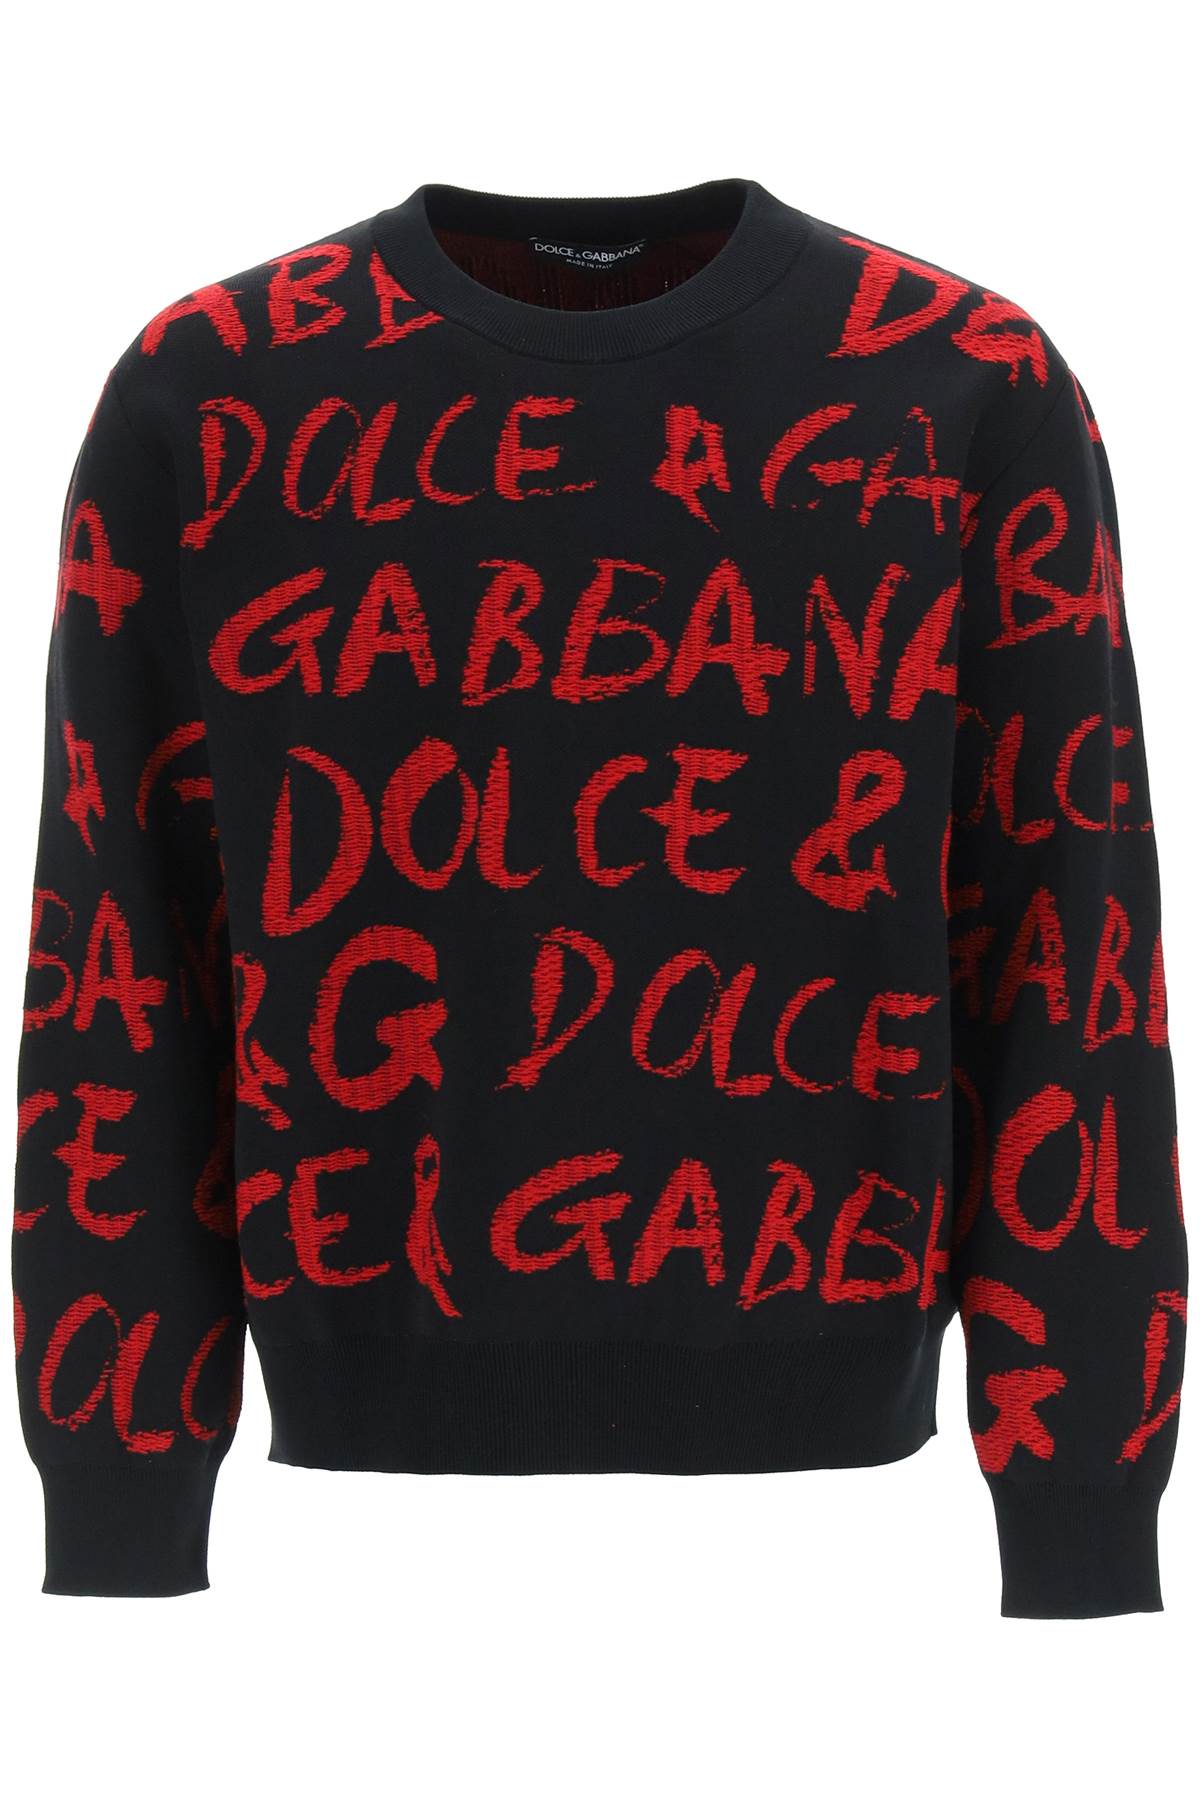 Dolce & Gabbana Jacquard Logo Sweater